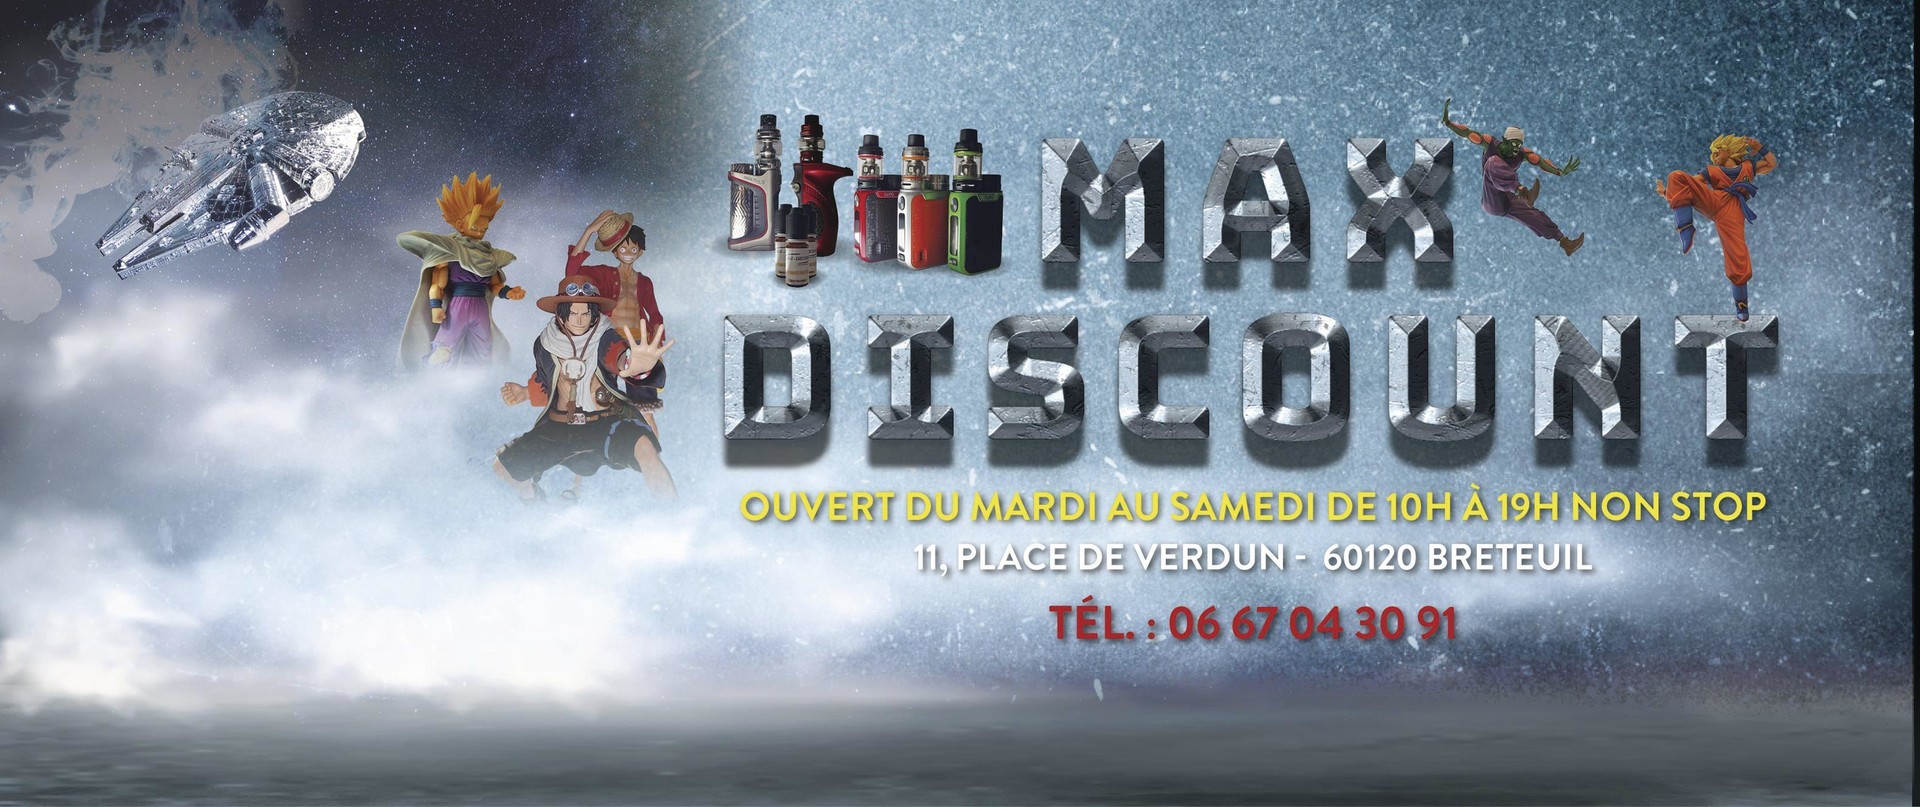 Boutique Max Discount - J'achte Oise Picarde